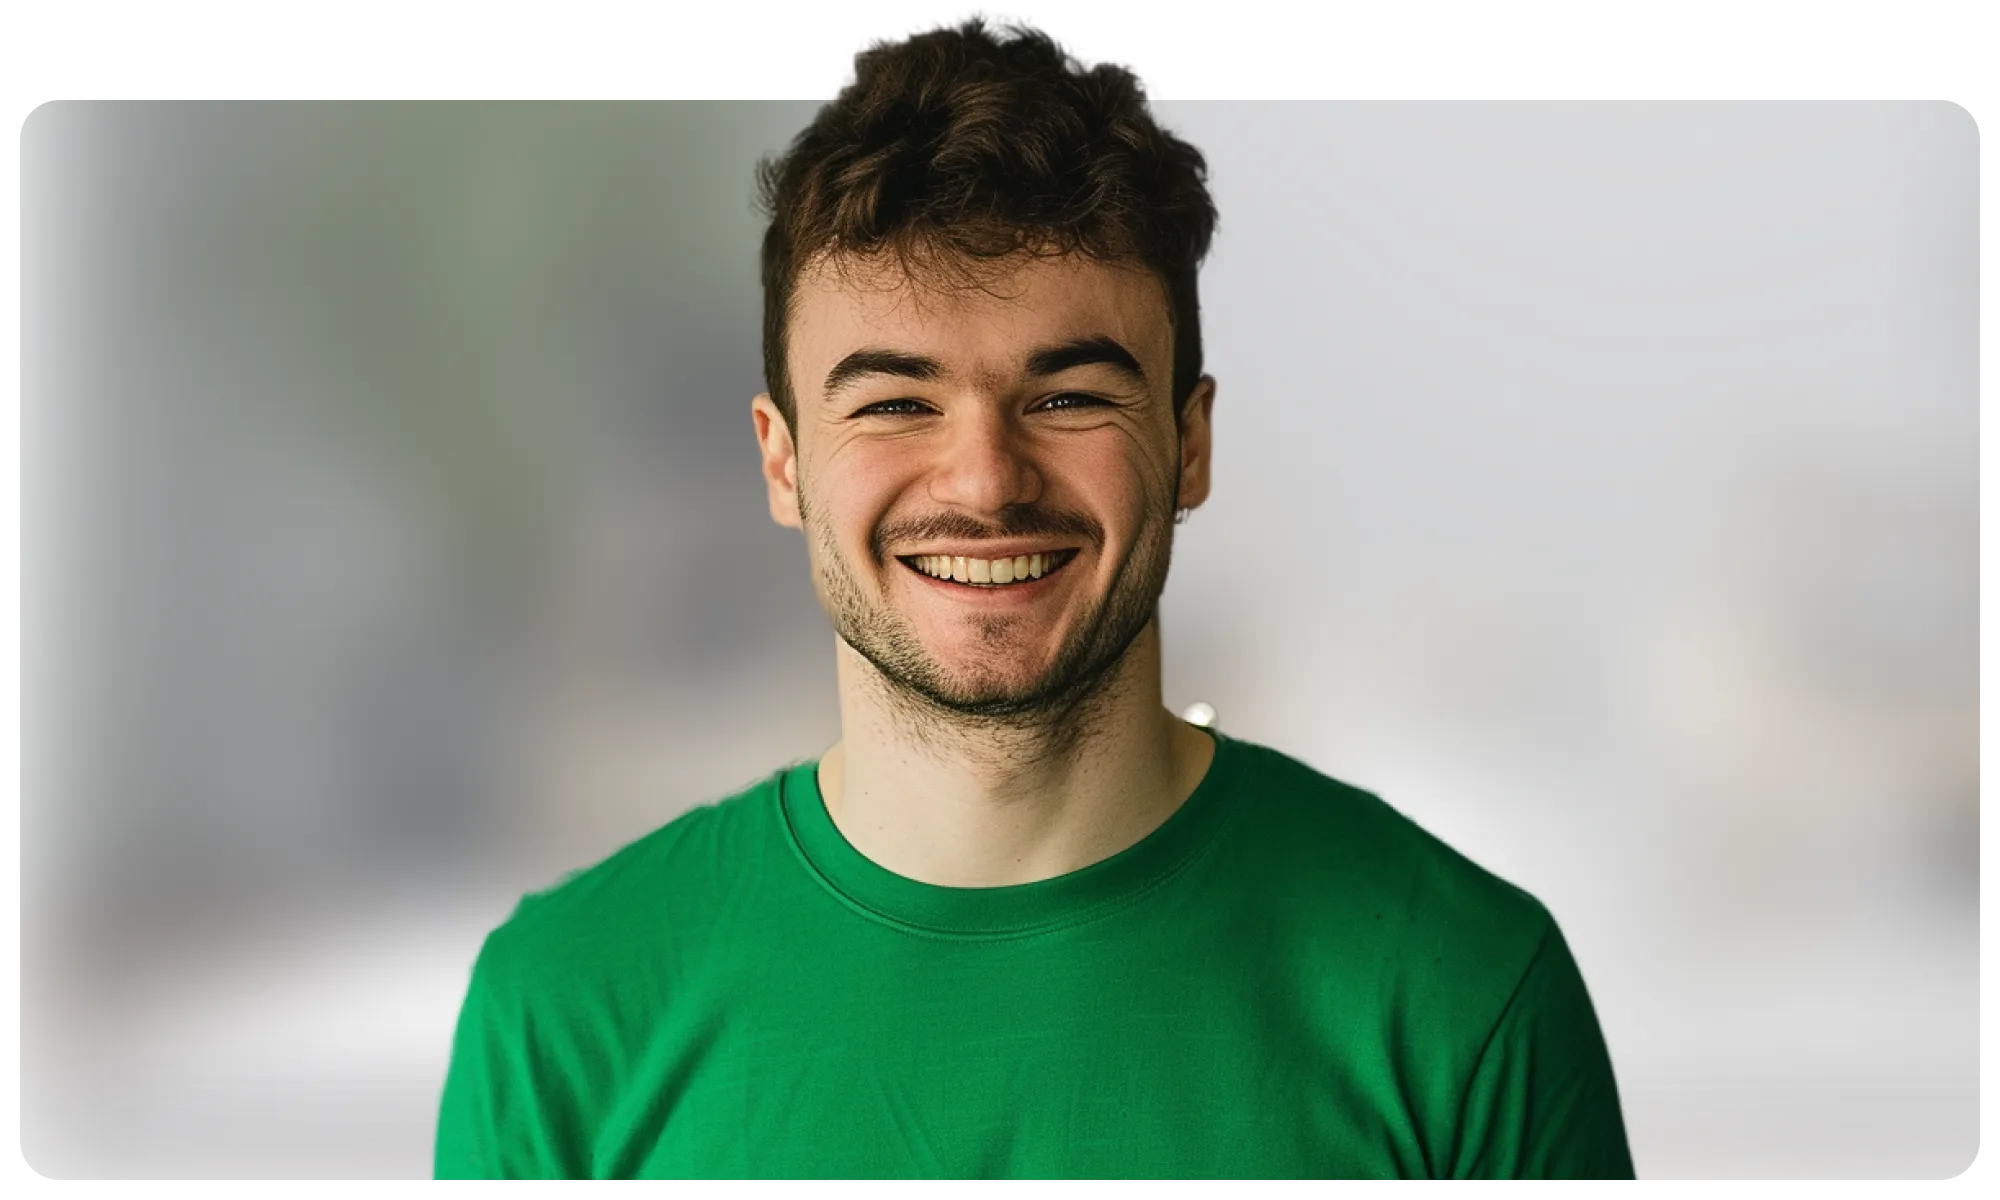 A happy man in a green tshirt